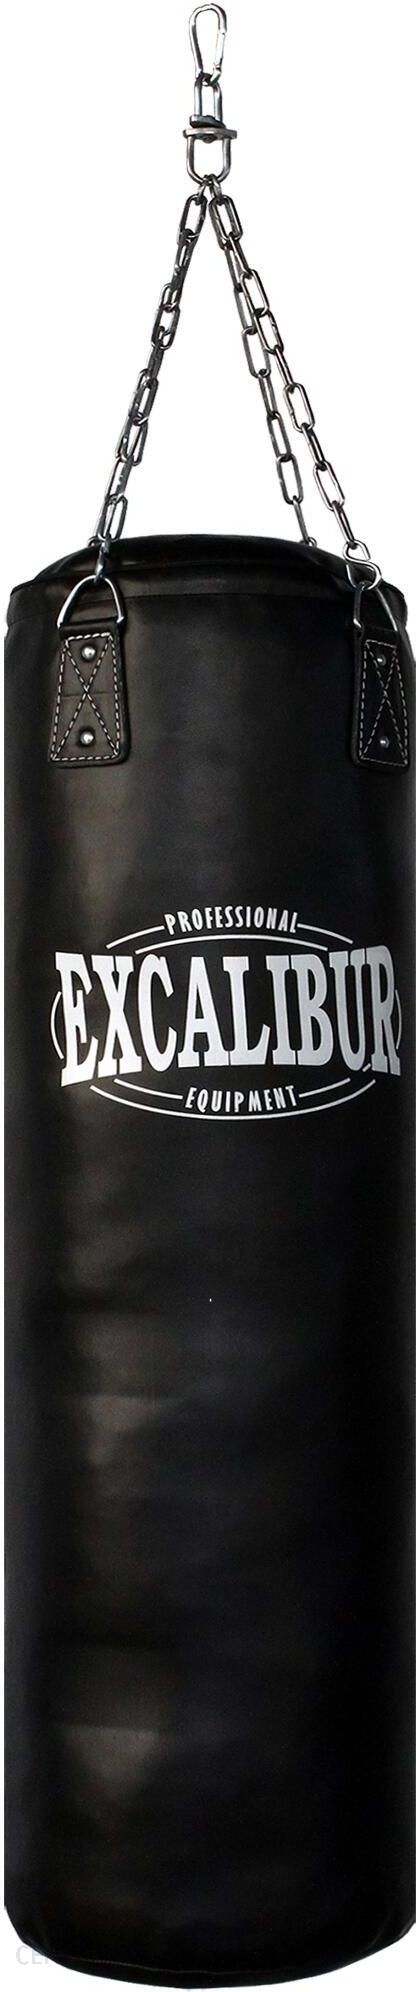 Excalibur Boxing Worek Treningowy Maxxus - i 34kg 120 Ceny Boxsack Pro Biały opinie Czarny